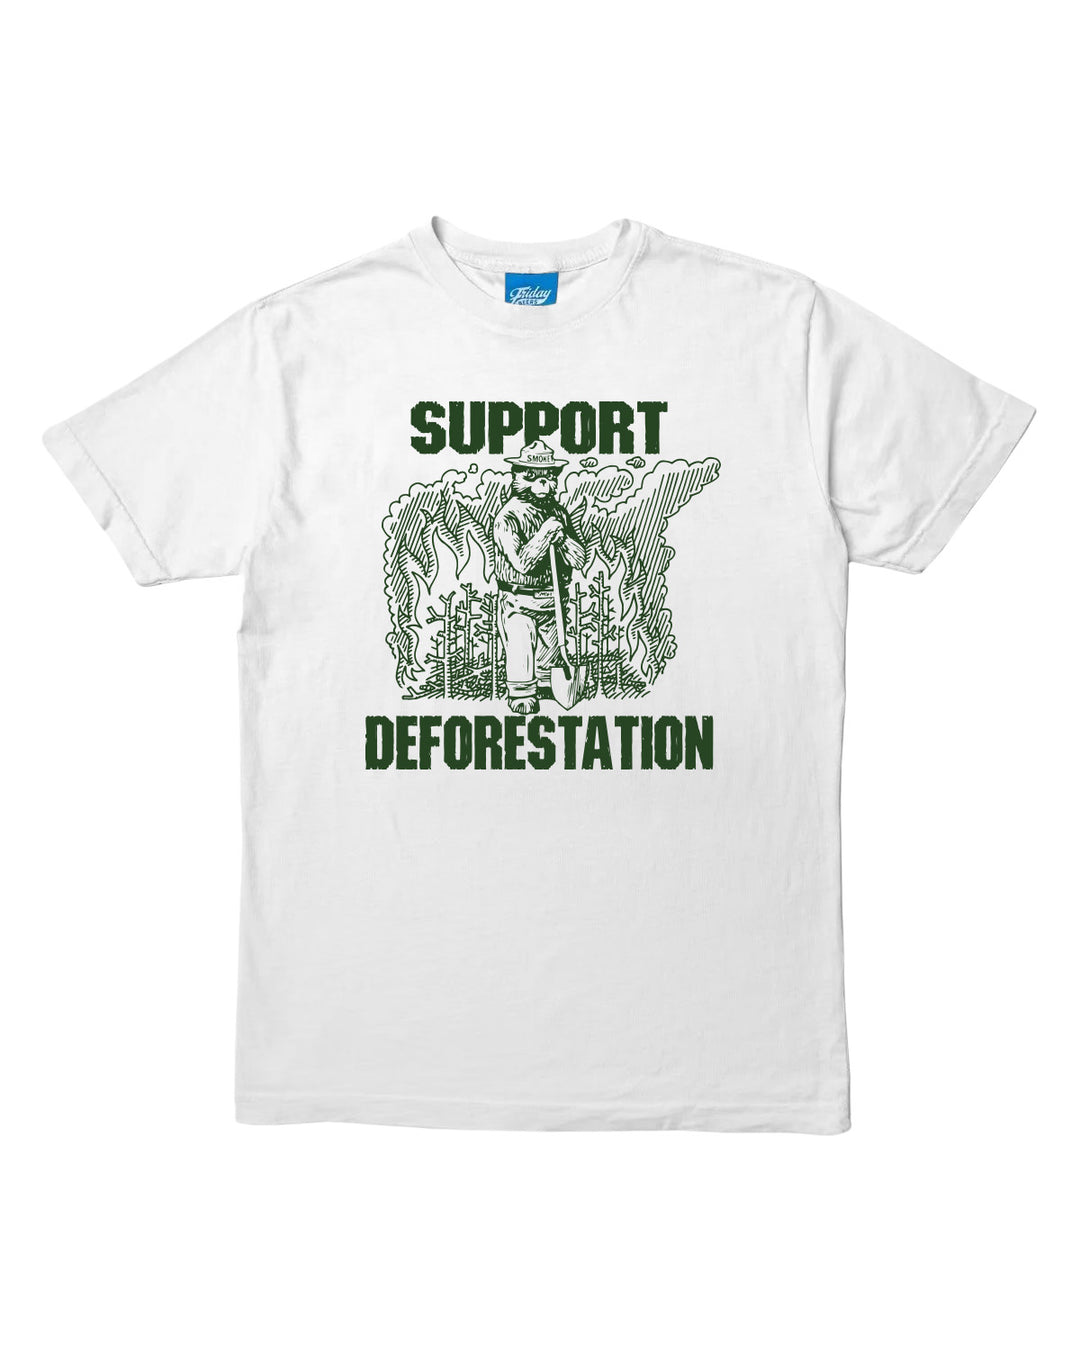 Support Deforestation Tee